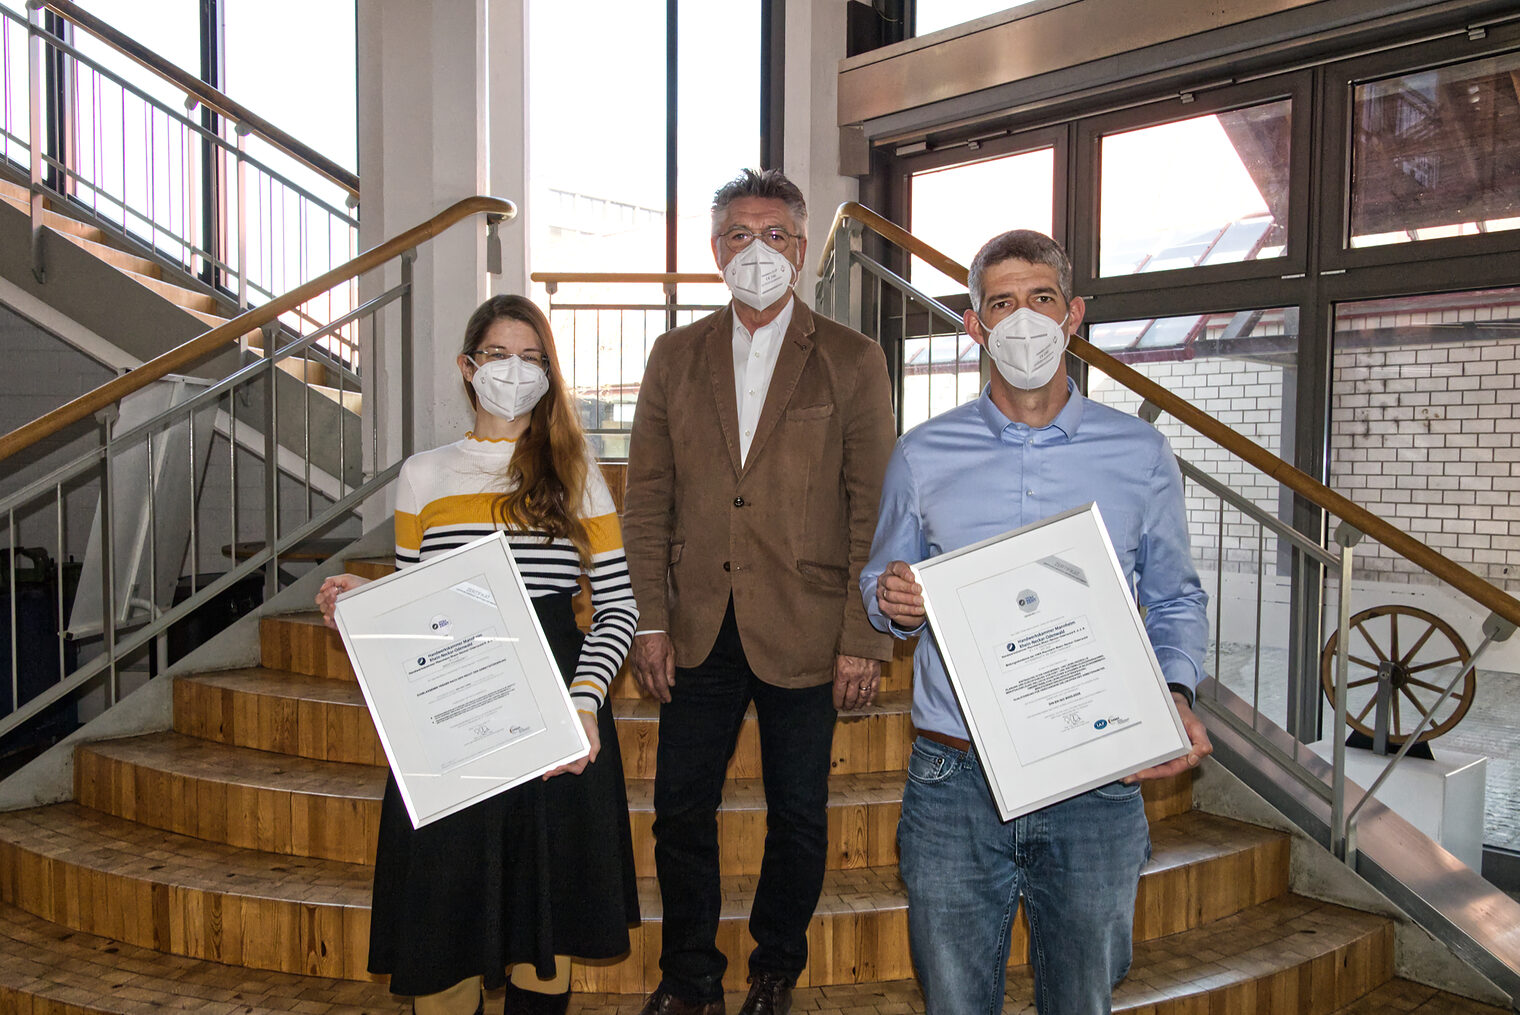 Mitarbeiter der Handwerkskammer im Treppenhaus der Bildungsakademie in Mannheim mit neu erhaltenem DIN EN ISO 9001 Zertifikat.